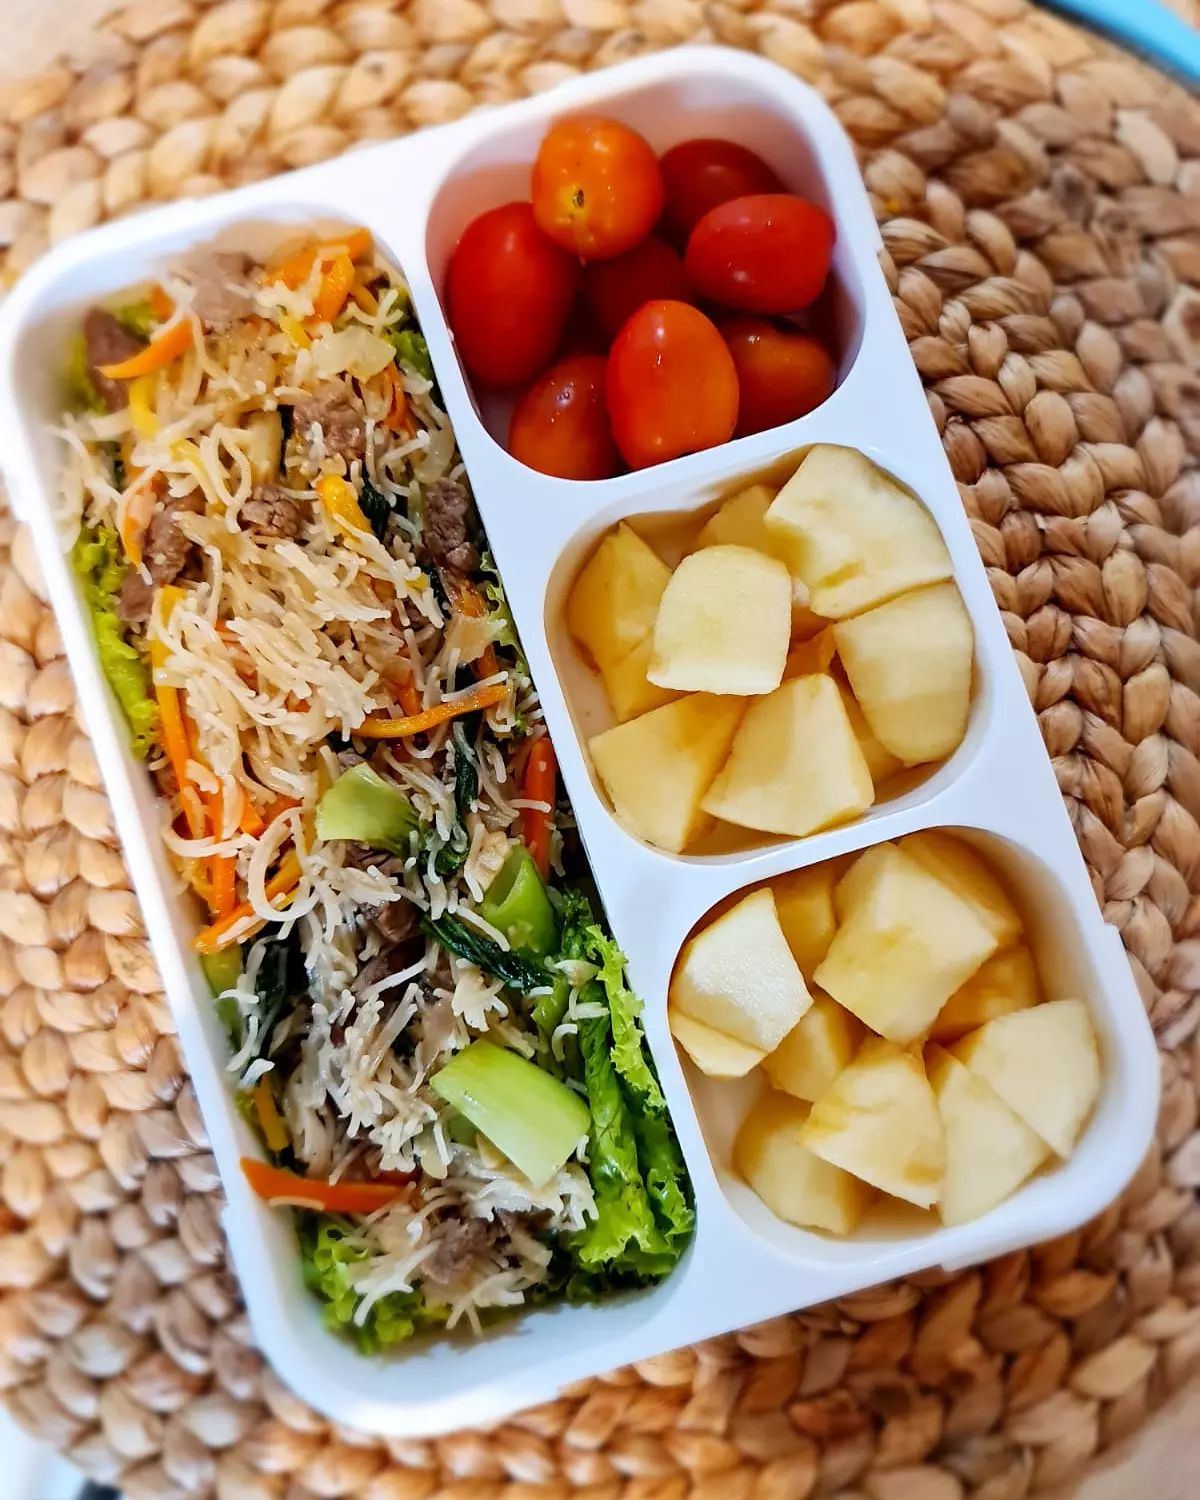 Lunchbox series: Beef stir fry with rice noodles/Bihun goreng daging sapi (~450 cal)